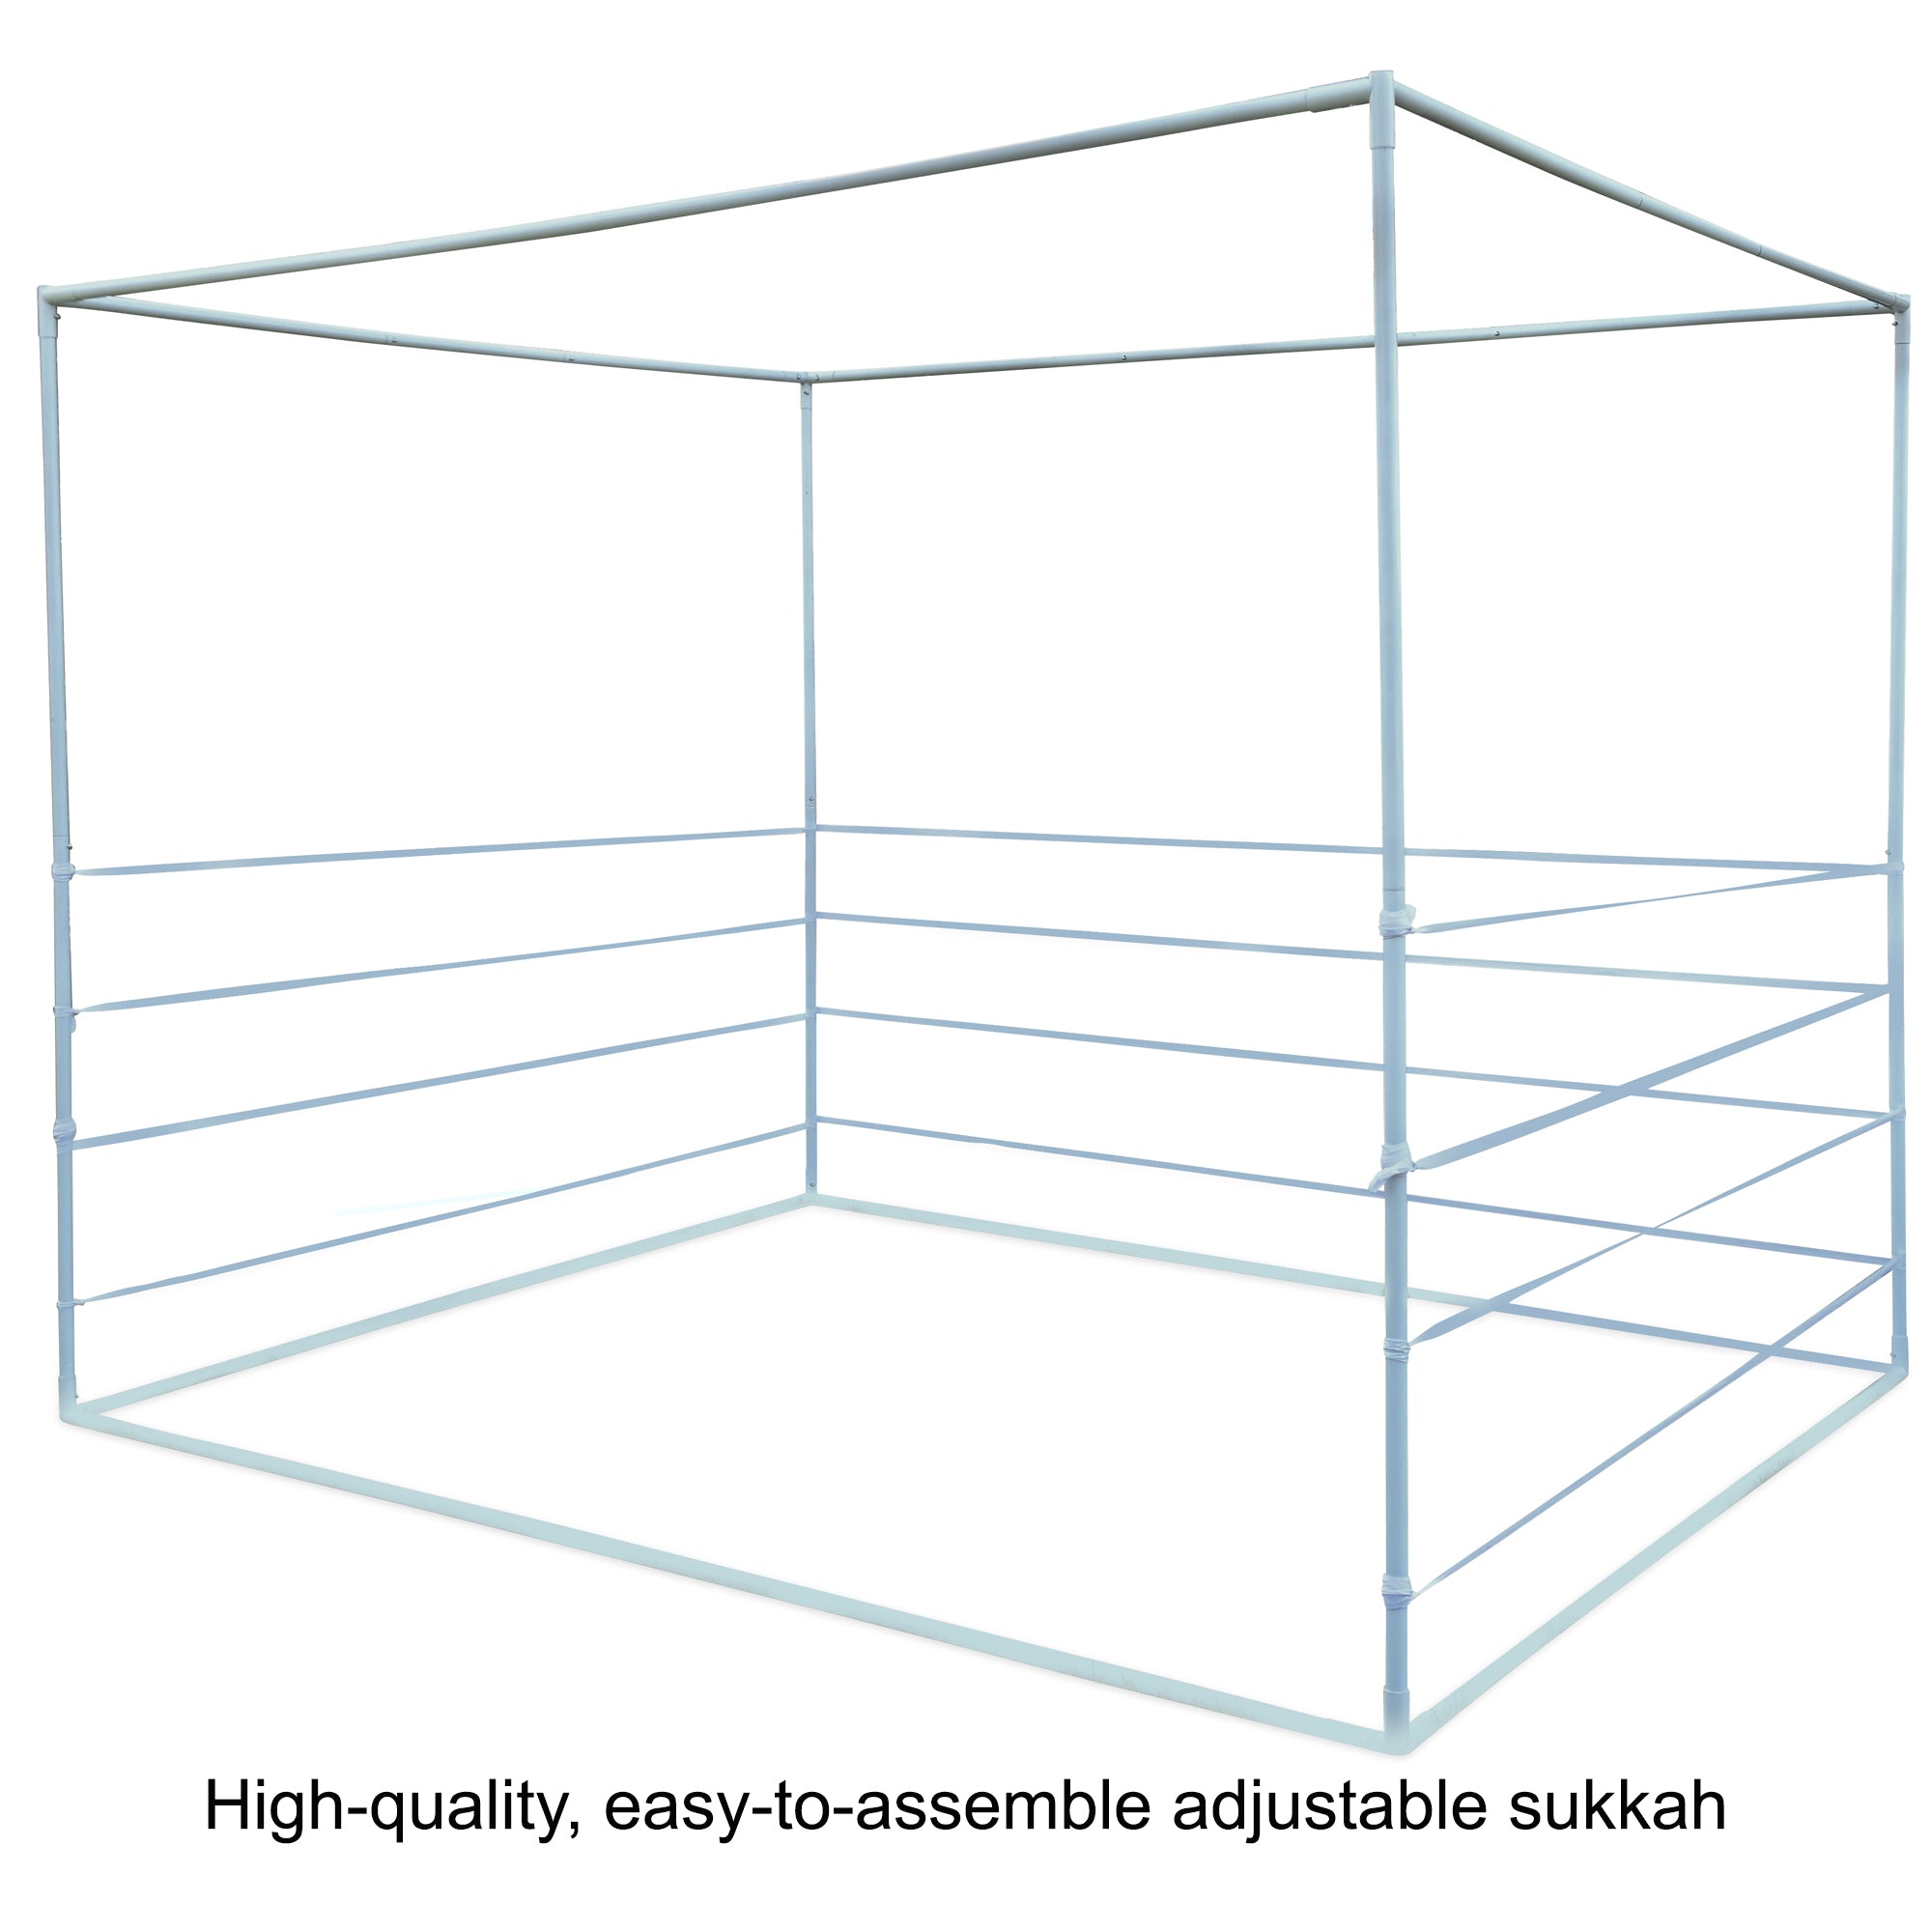 Sukkot Hadar - 8X10 - Adjustable Sukkah Set, up to 14 Sizes, Kosher Certified, Easy to Assemble